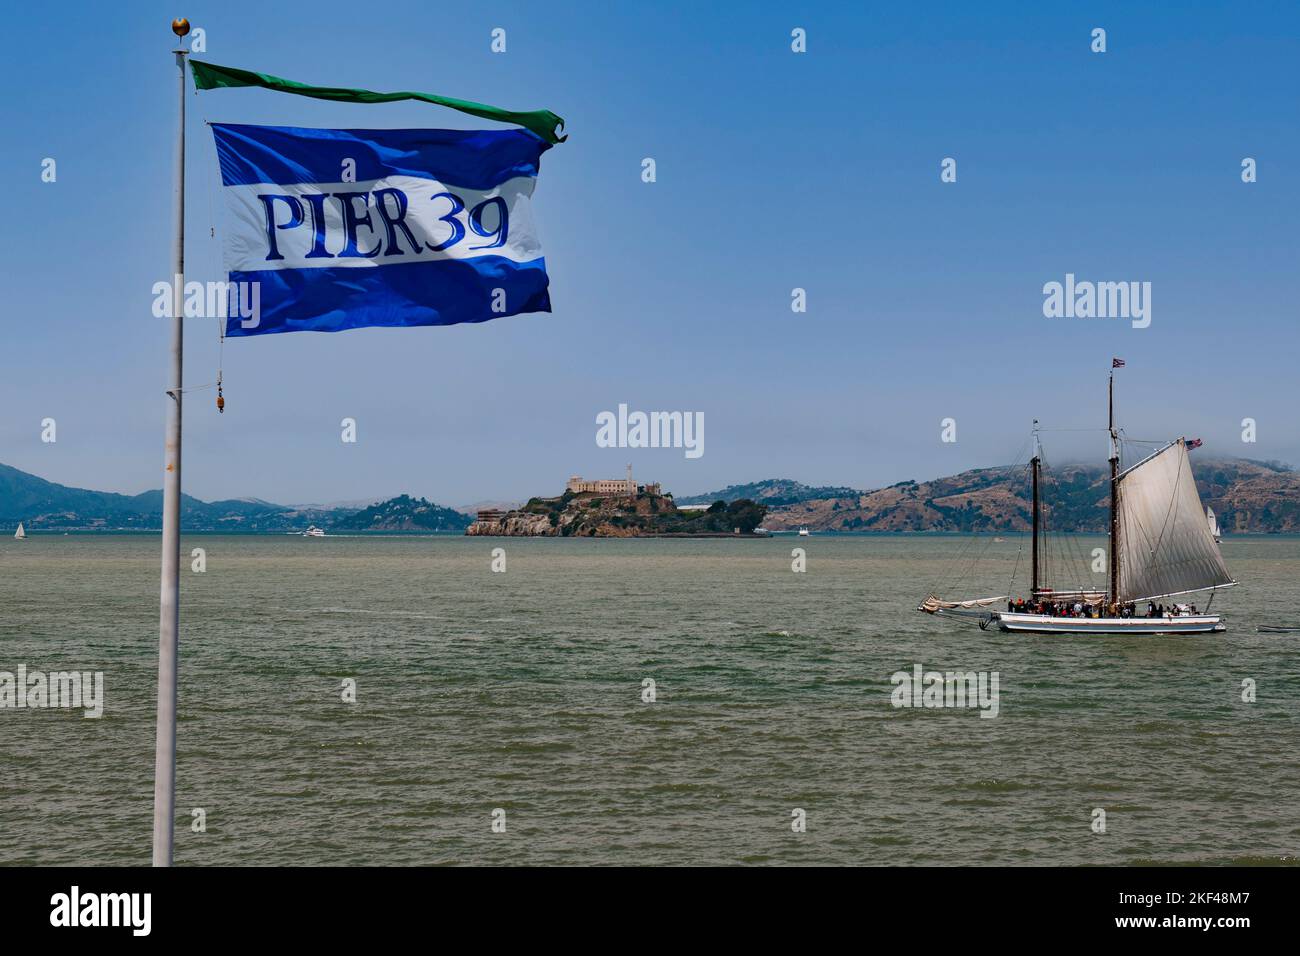 Fahne von Pier 39 und historisches Segelboot in der San Francisco Bay, hinten die Insel Alcatraz, San Francisco, Kalifornien, Etats-Unis, Nordamerika Banque D'Images